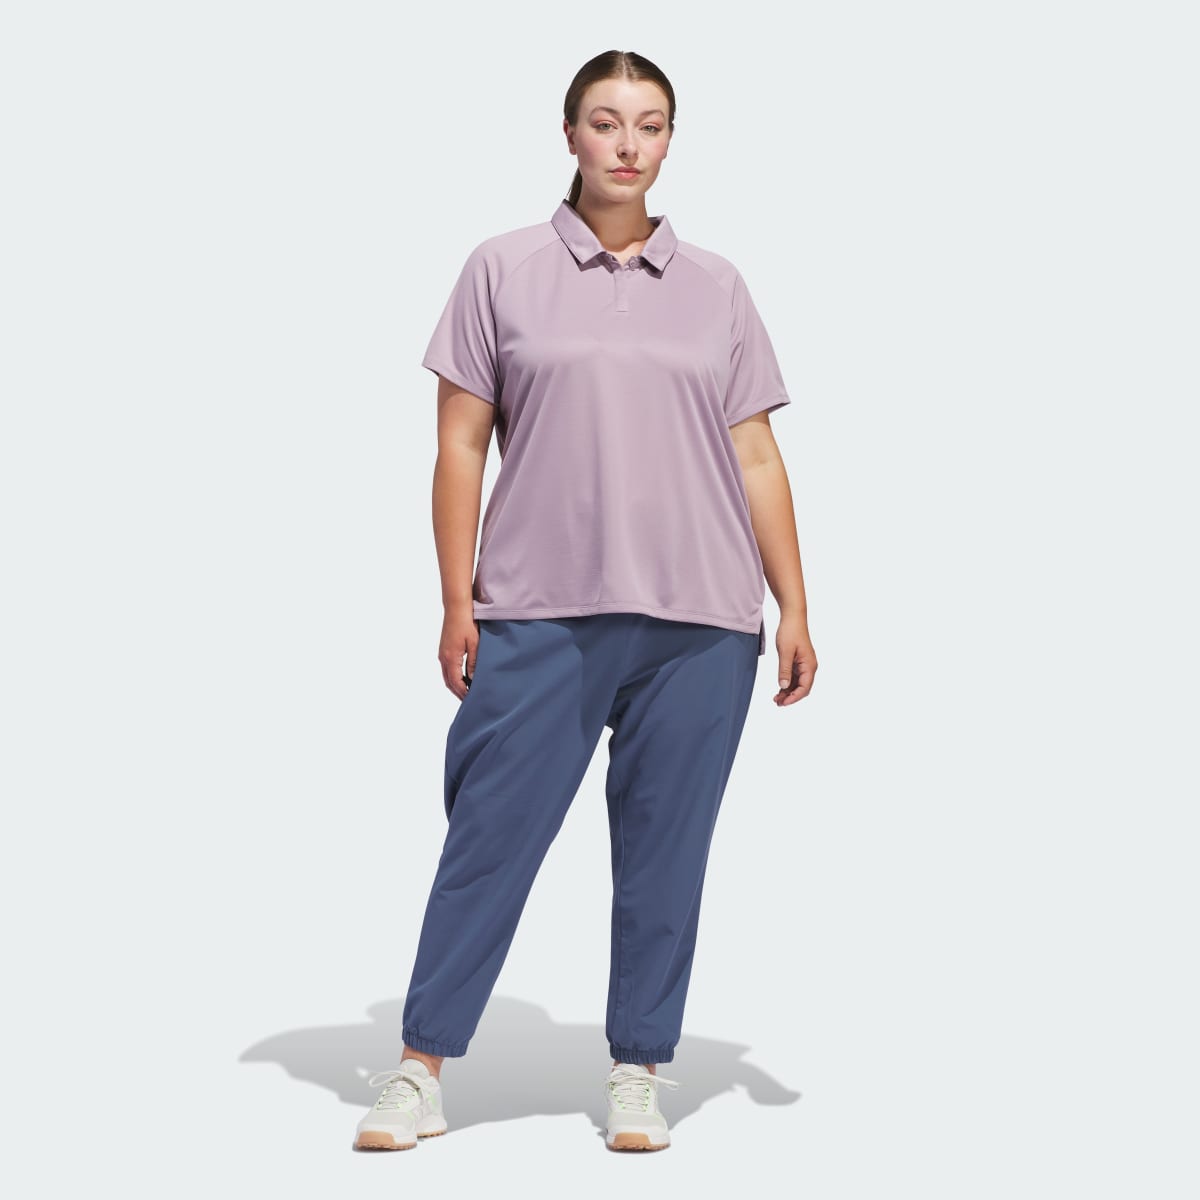 Adidas Spodnie dresowe Women's Ultimate365 (Plus Size). 5